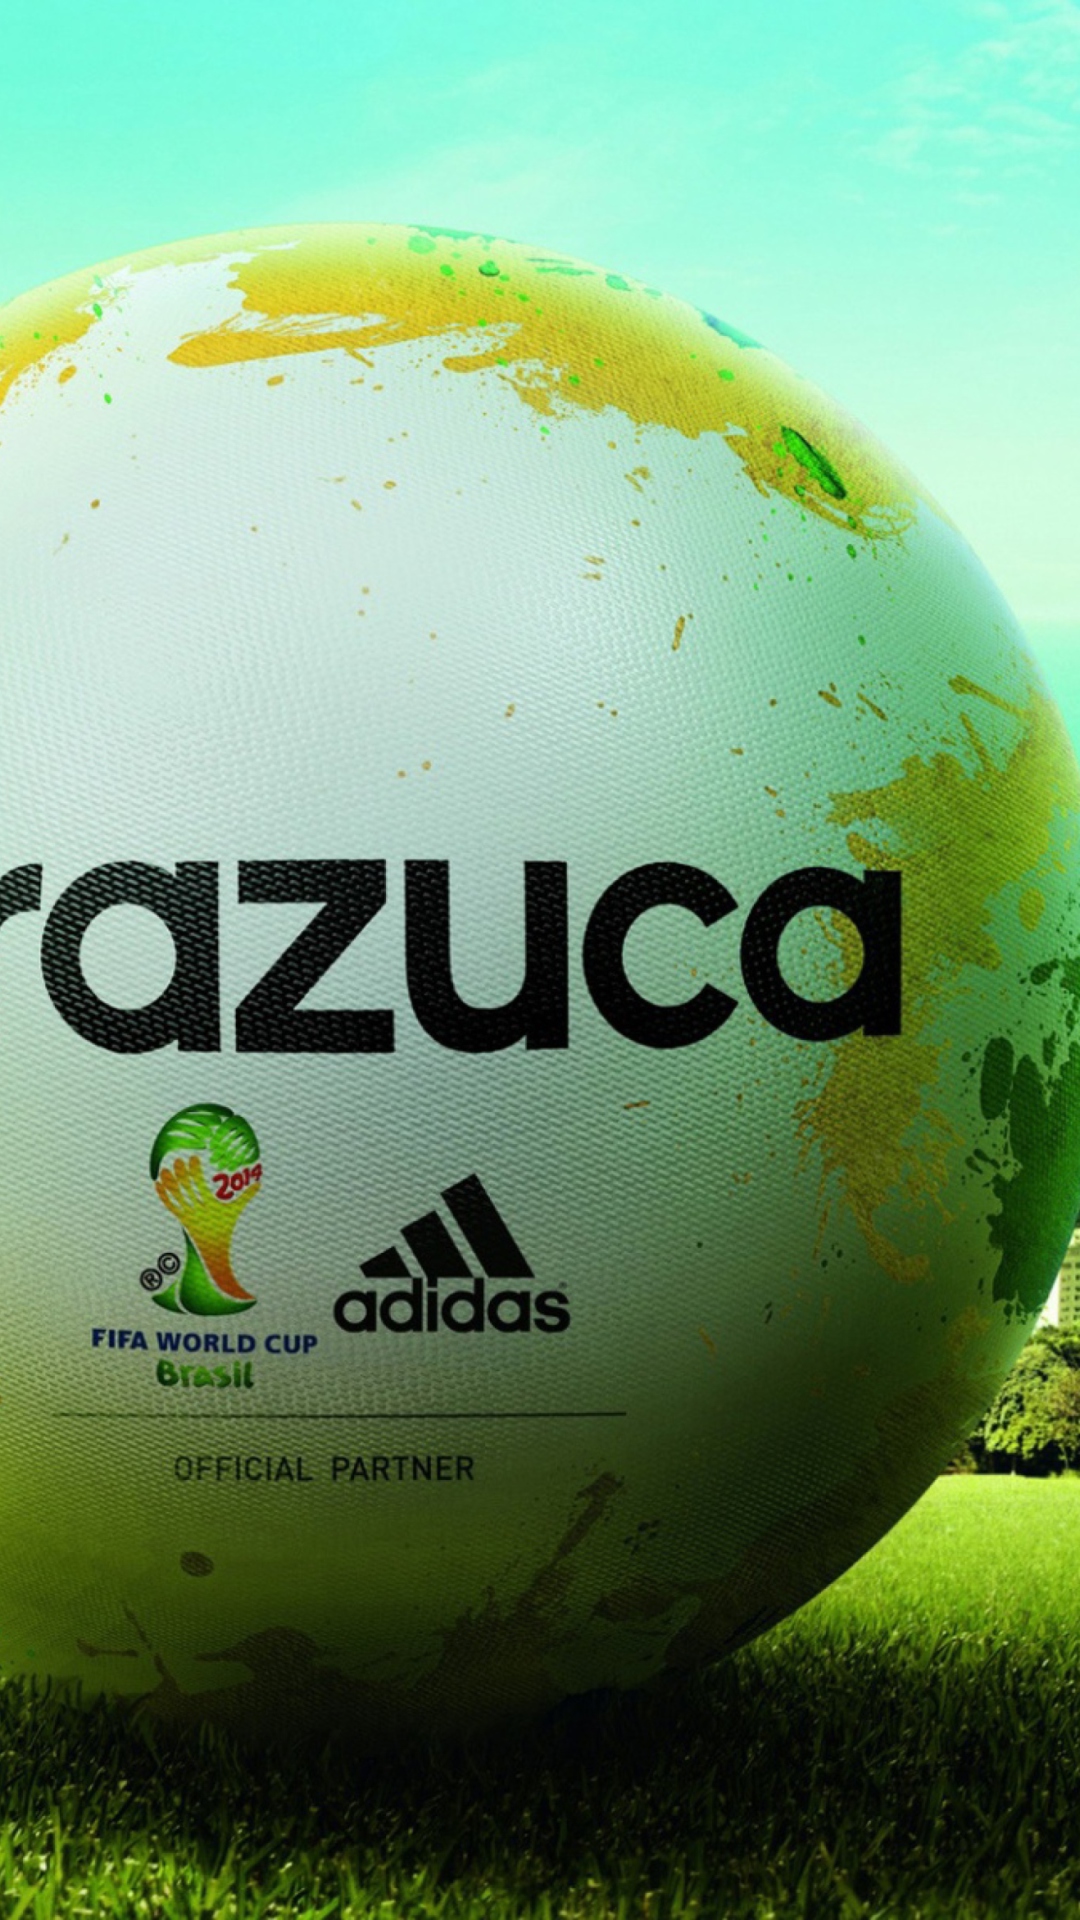 Das Adidas Brazuca Match Ball FIFA World Cup 2014 Wallpaper 1080x1920